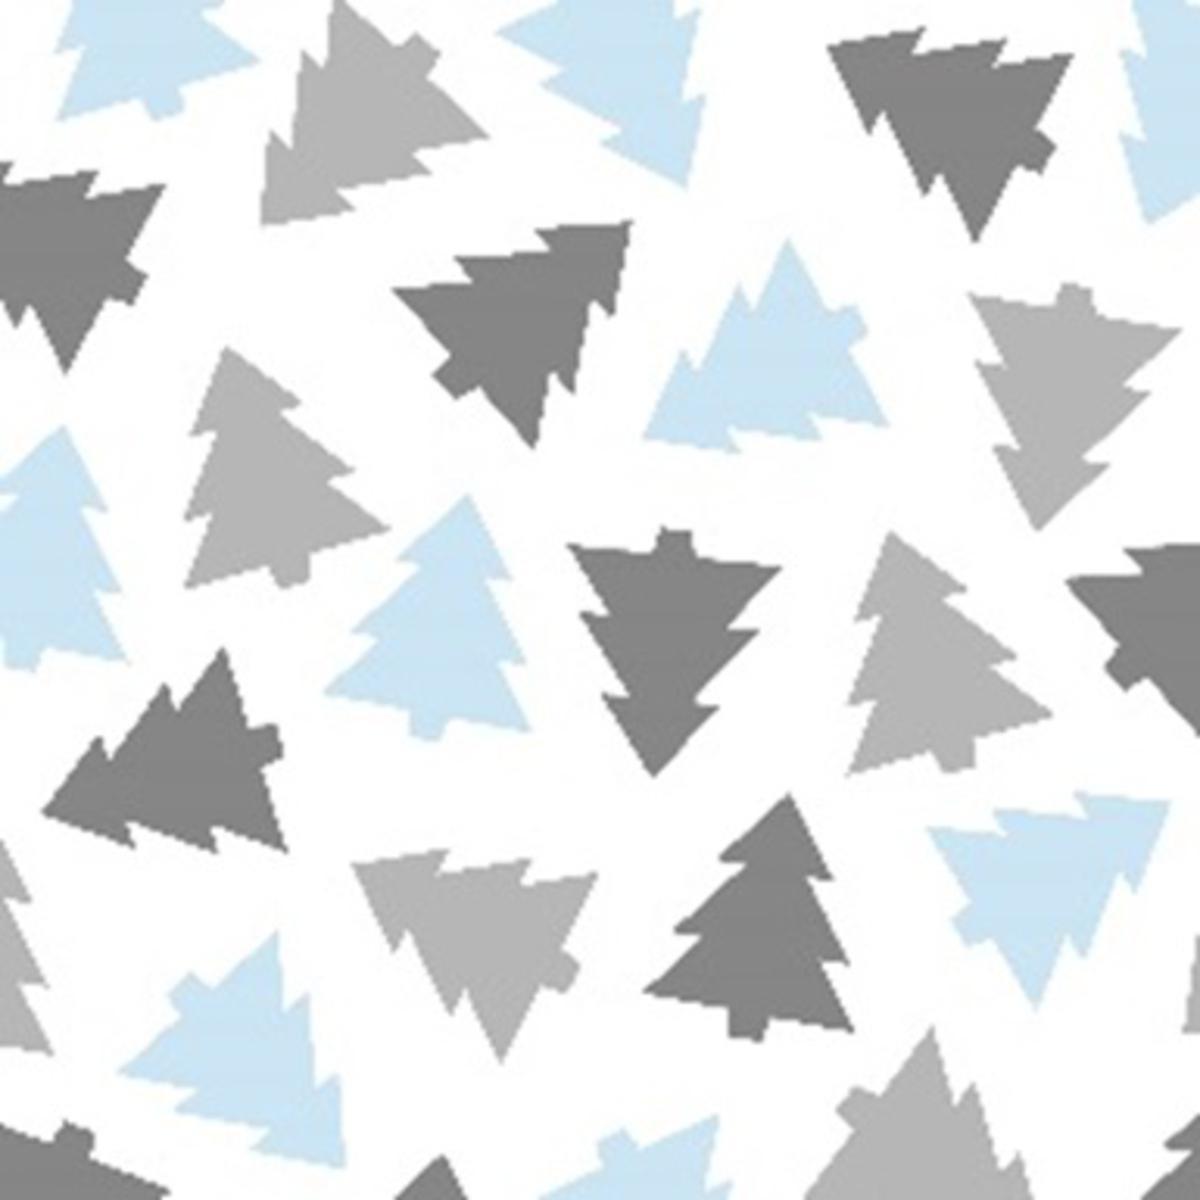 Lot de 20 serviettes imprimées - Papier - 33 x 33 cm - Blanc, gris et bleu